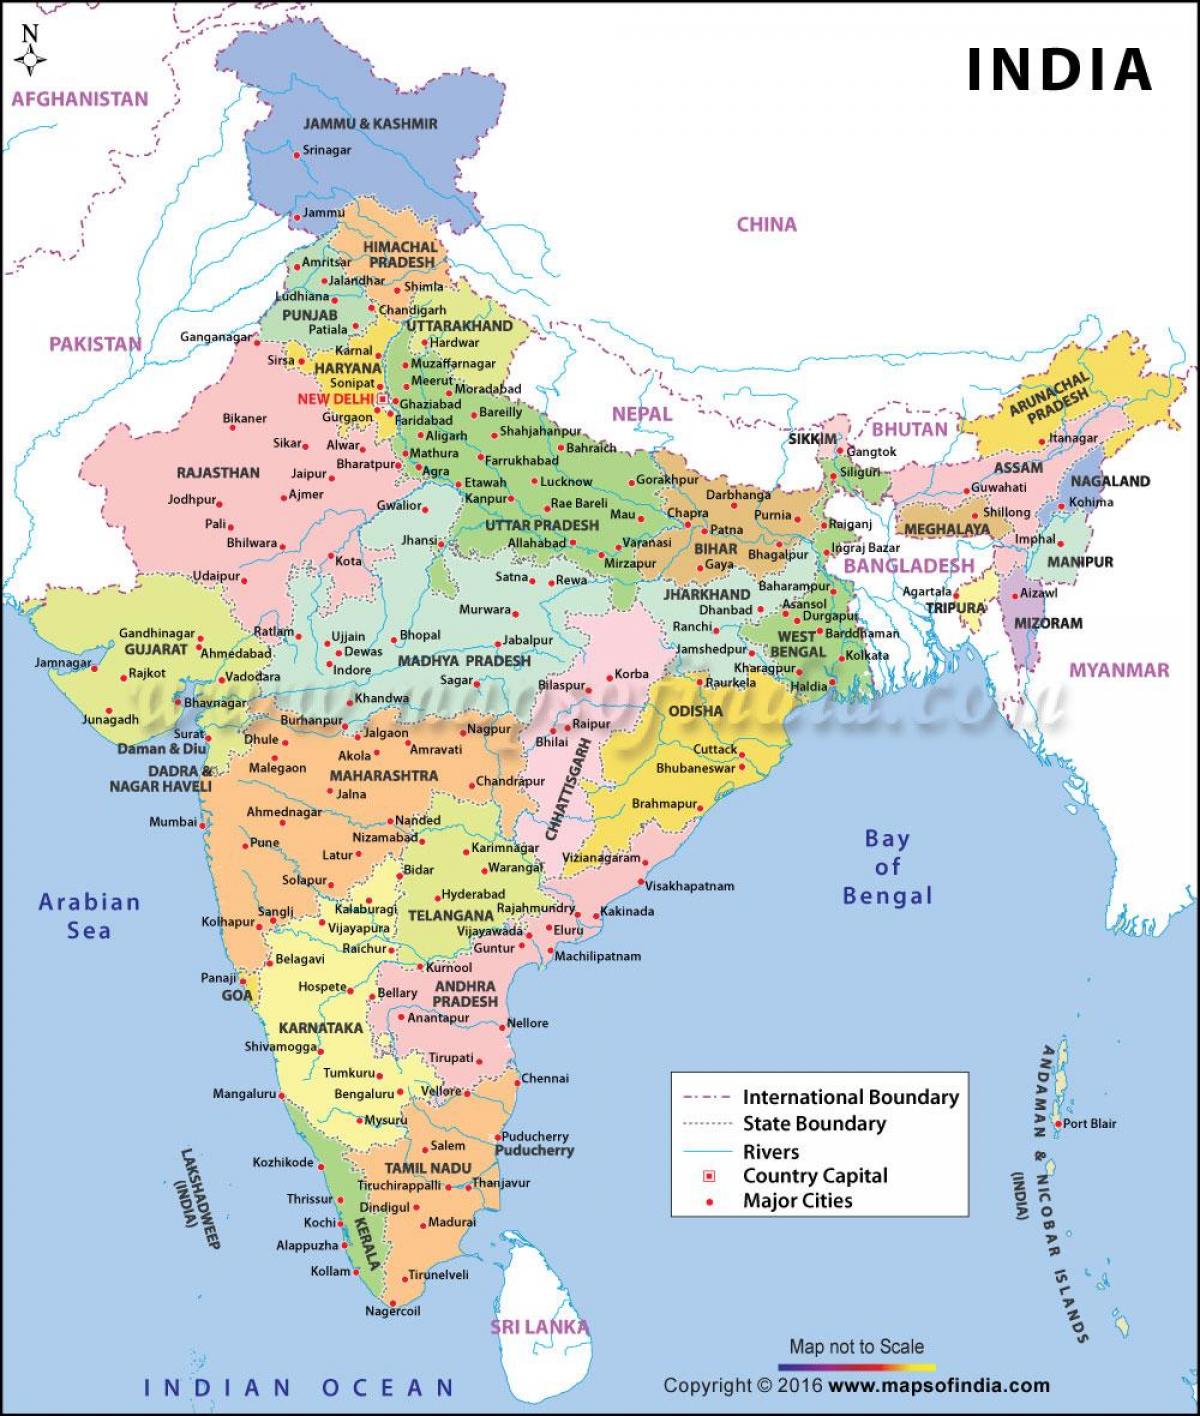 les principaux ports de la carte de l'Inde